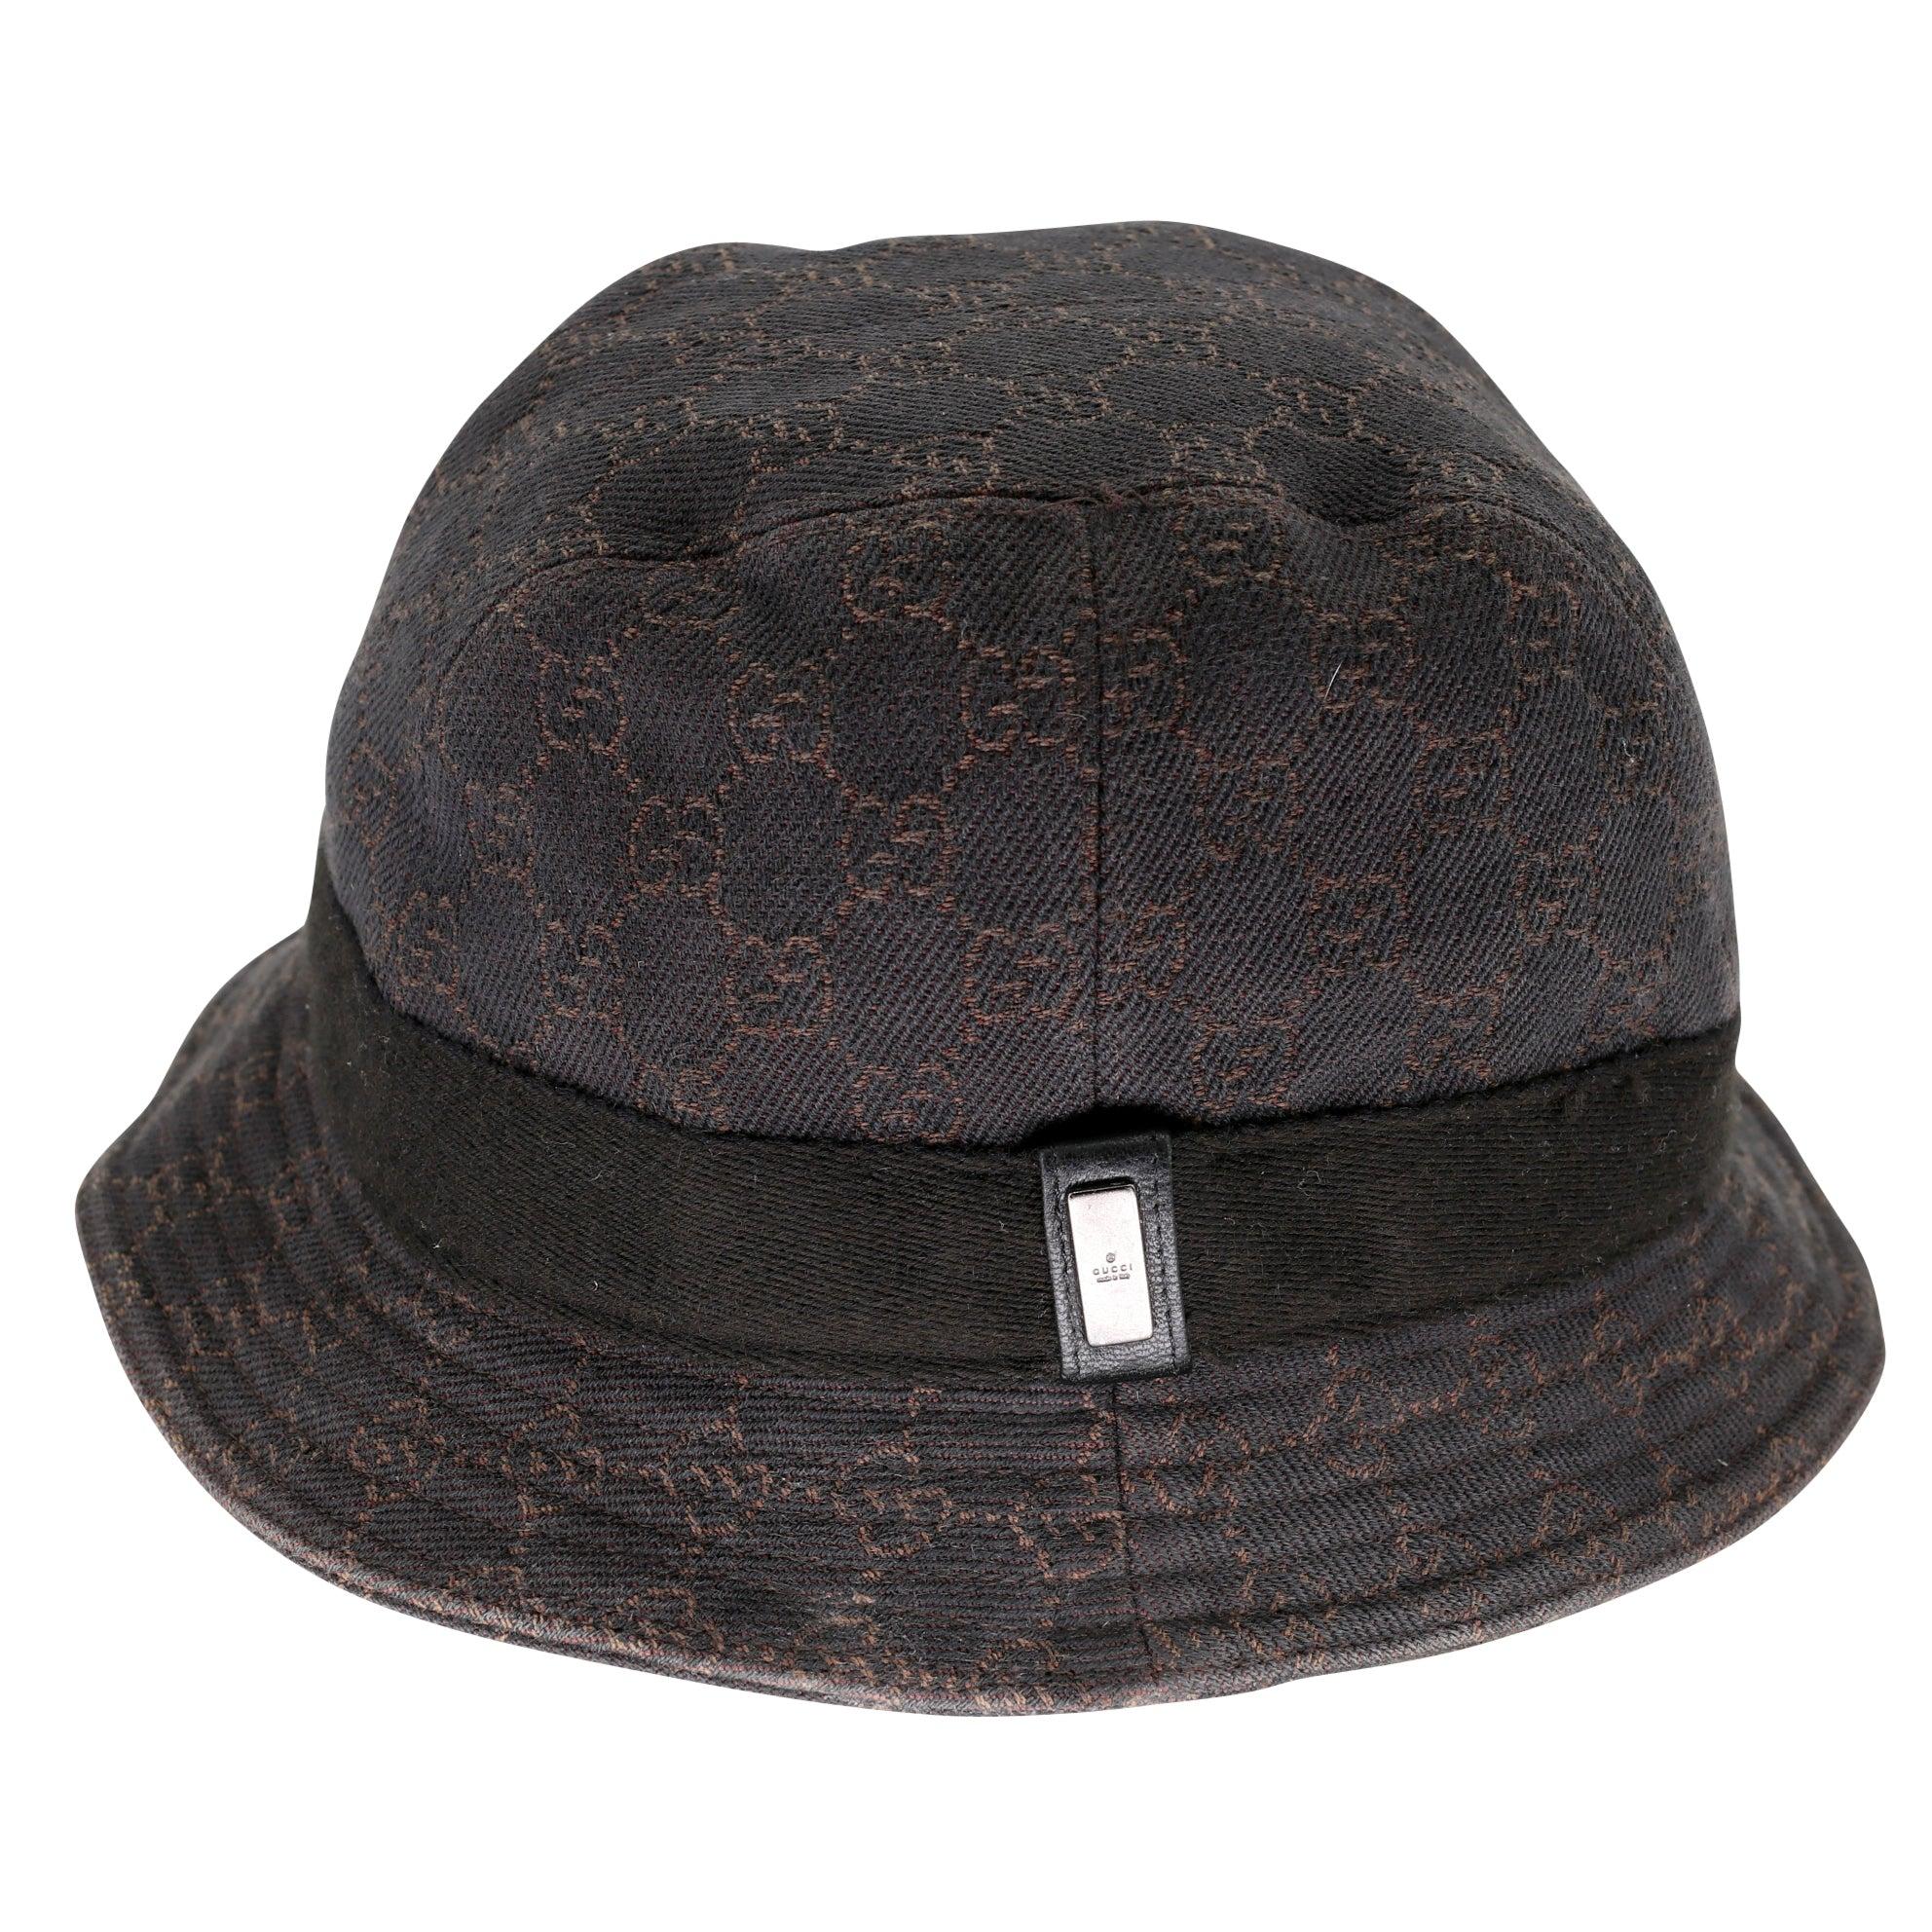 Gucci Signatur GG Monogramm Eimer Hut perfekt für den täglichen Gebrauch und unisex aktualisieren Sie Ihre Garderobe mit diesem muss Zubehör haben.  Dieses zeitlose Kleidungsstück ist gebraucht und weist die üblichen Gebrauchsspuren auf, wie z. B.